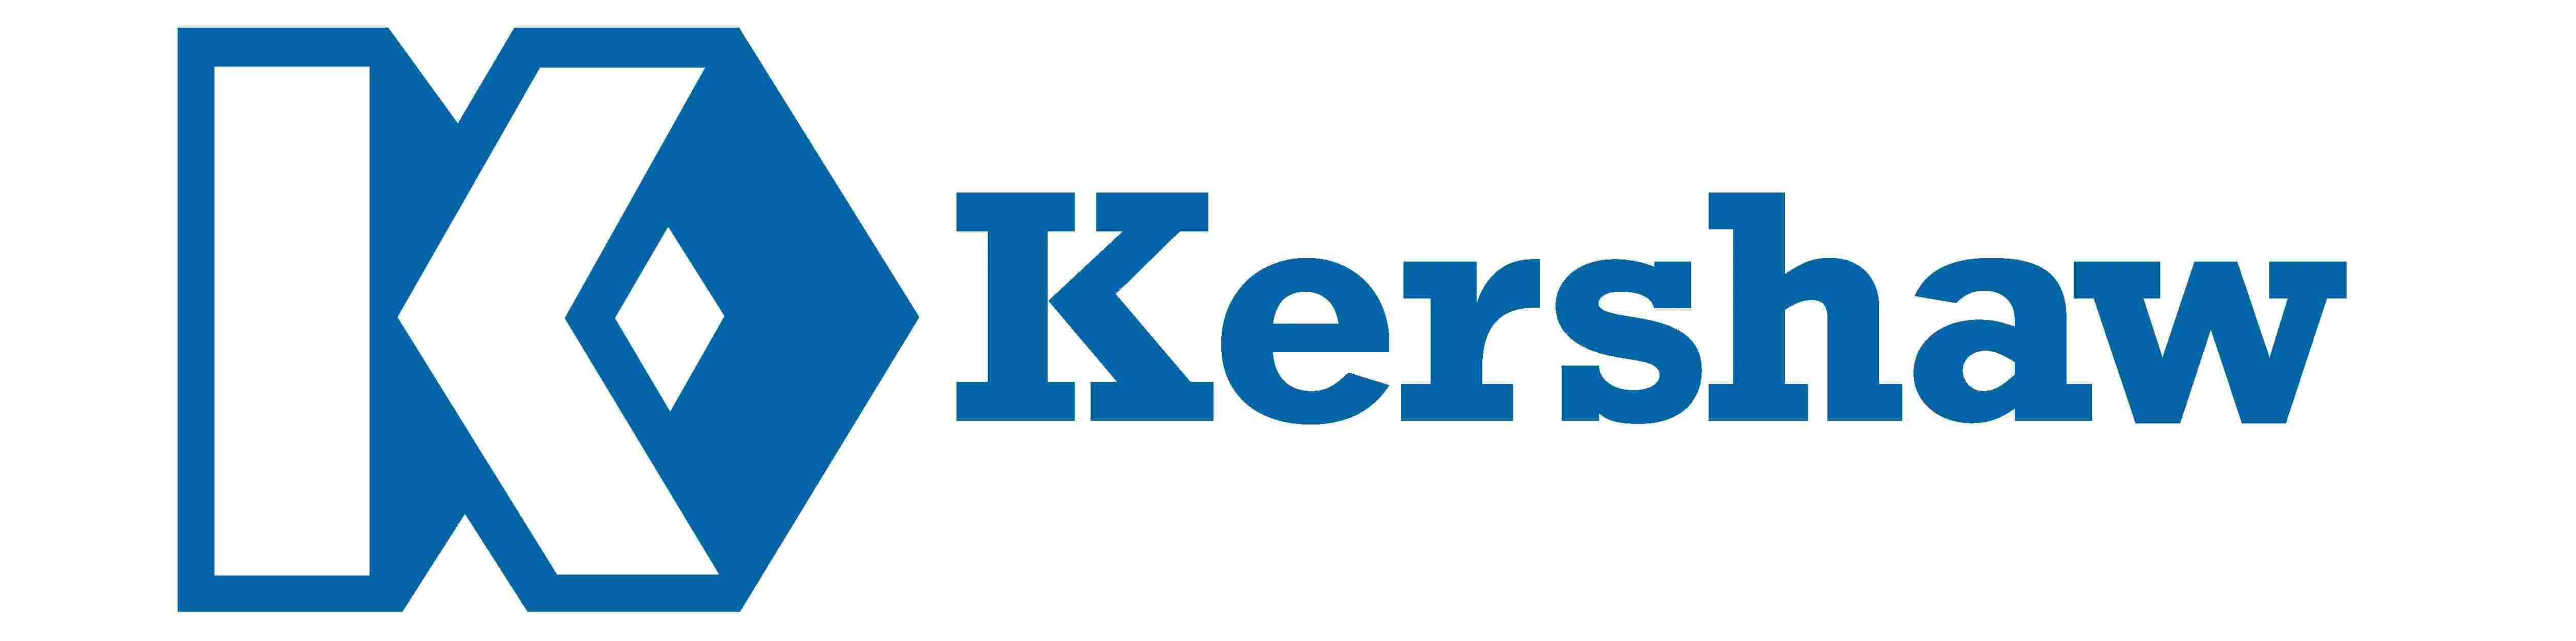 kershaw logo resized